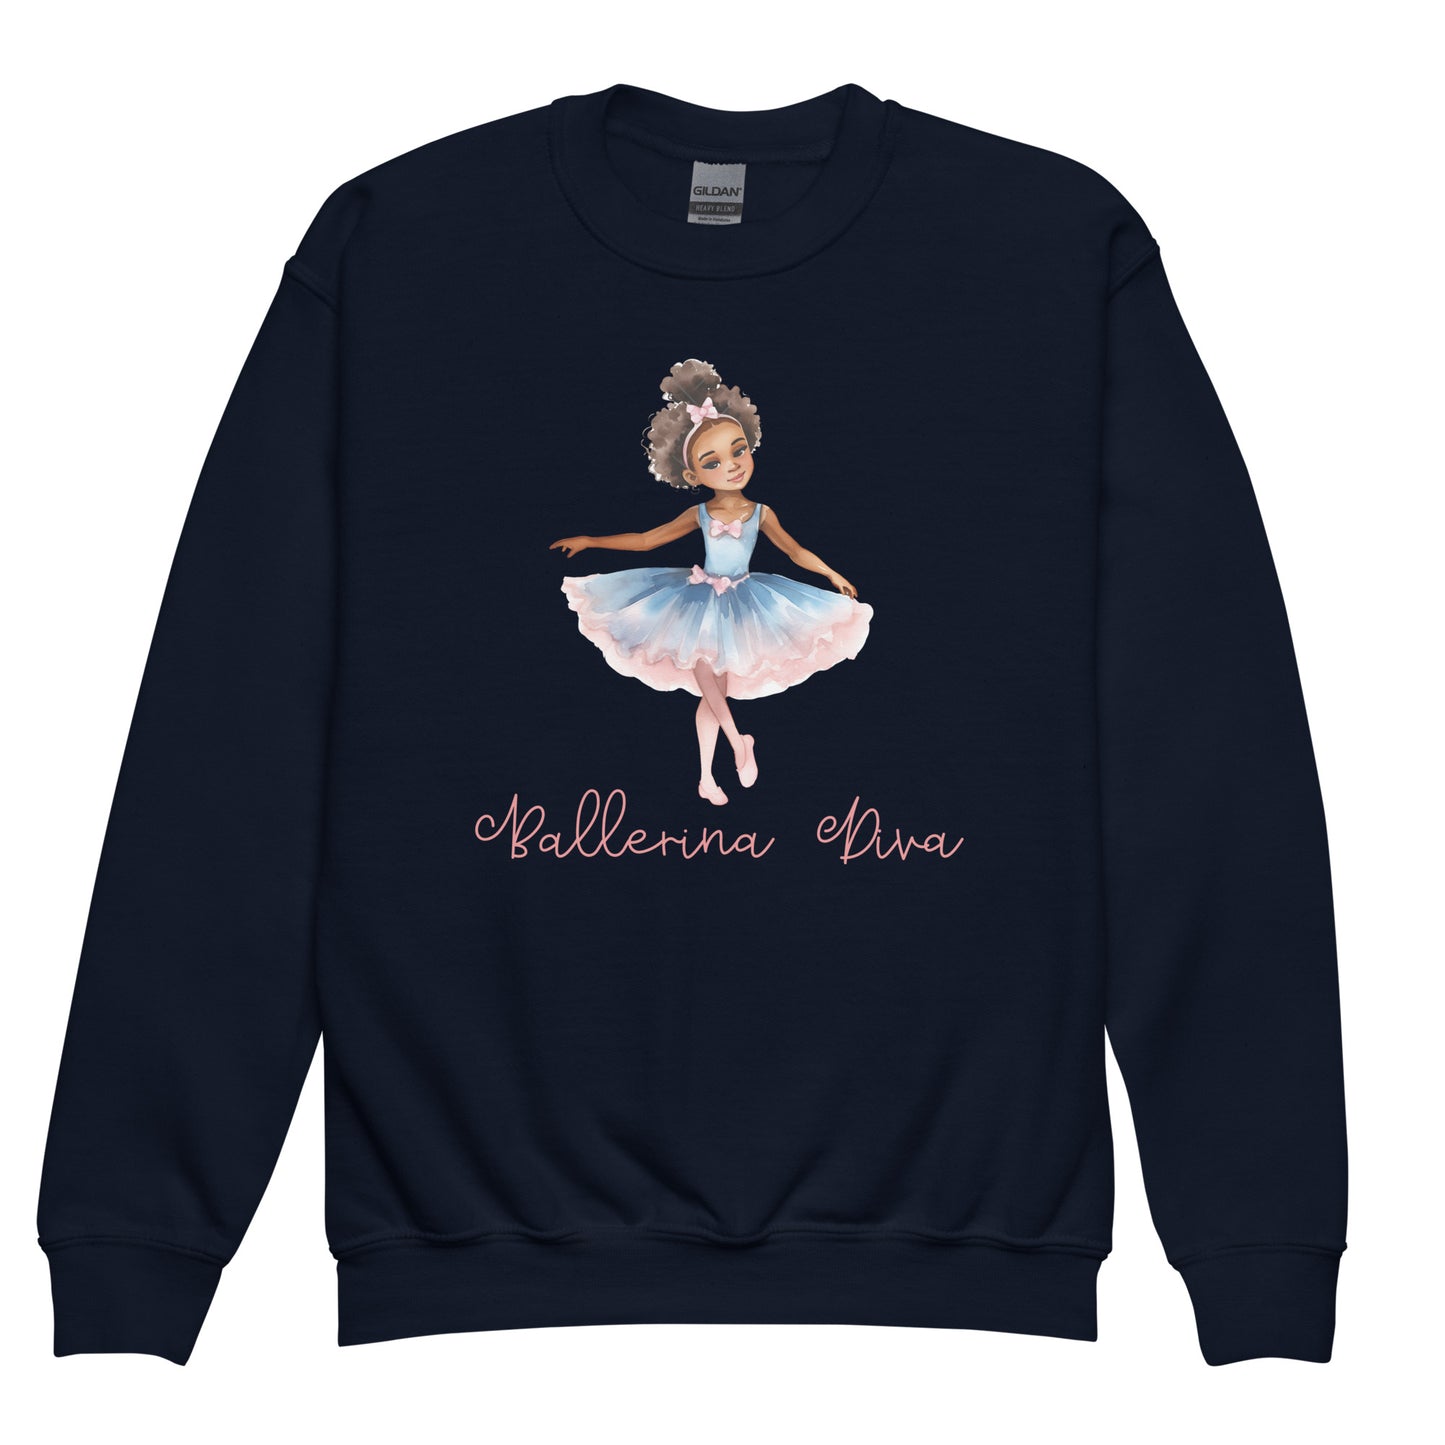 Kids Navy Blue Sweatshirt - Ballerina Diva 2 Front View of African Child Ballerina